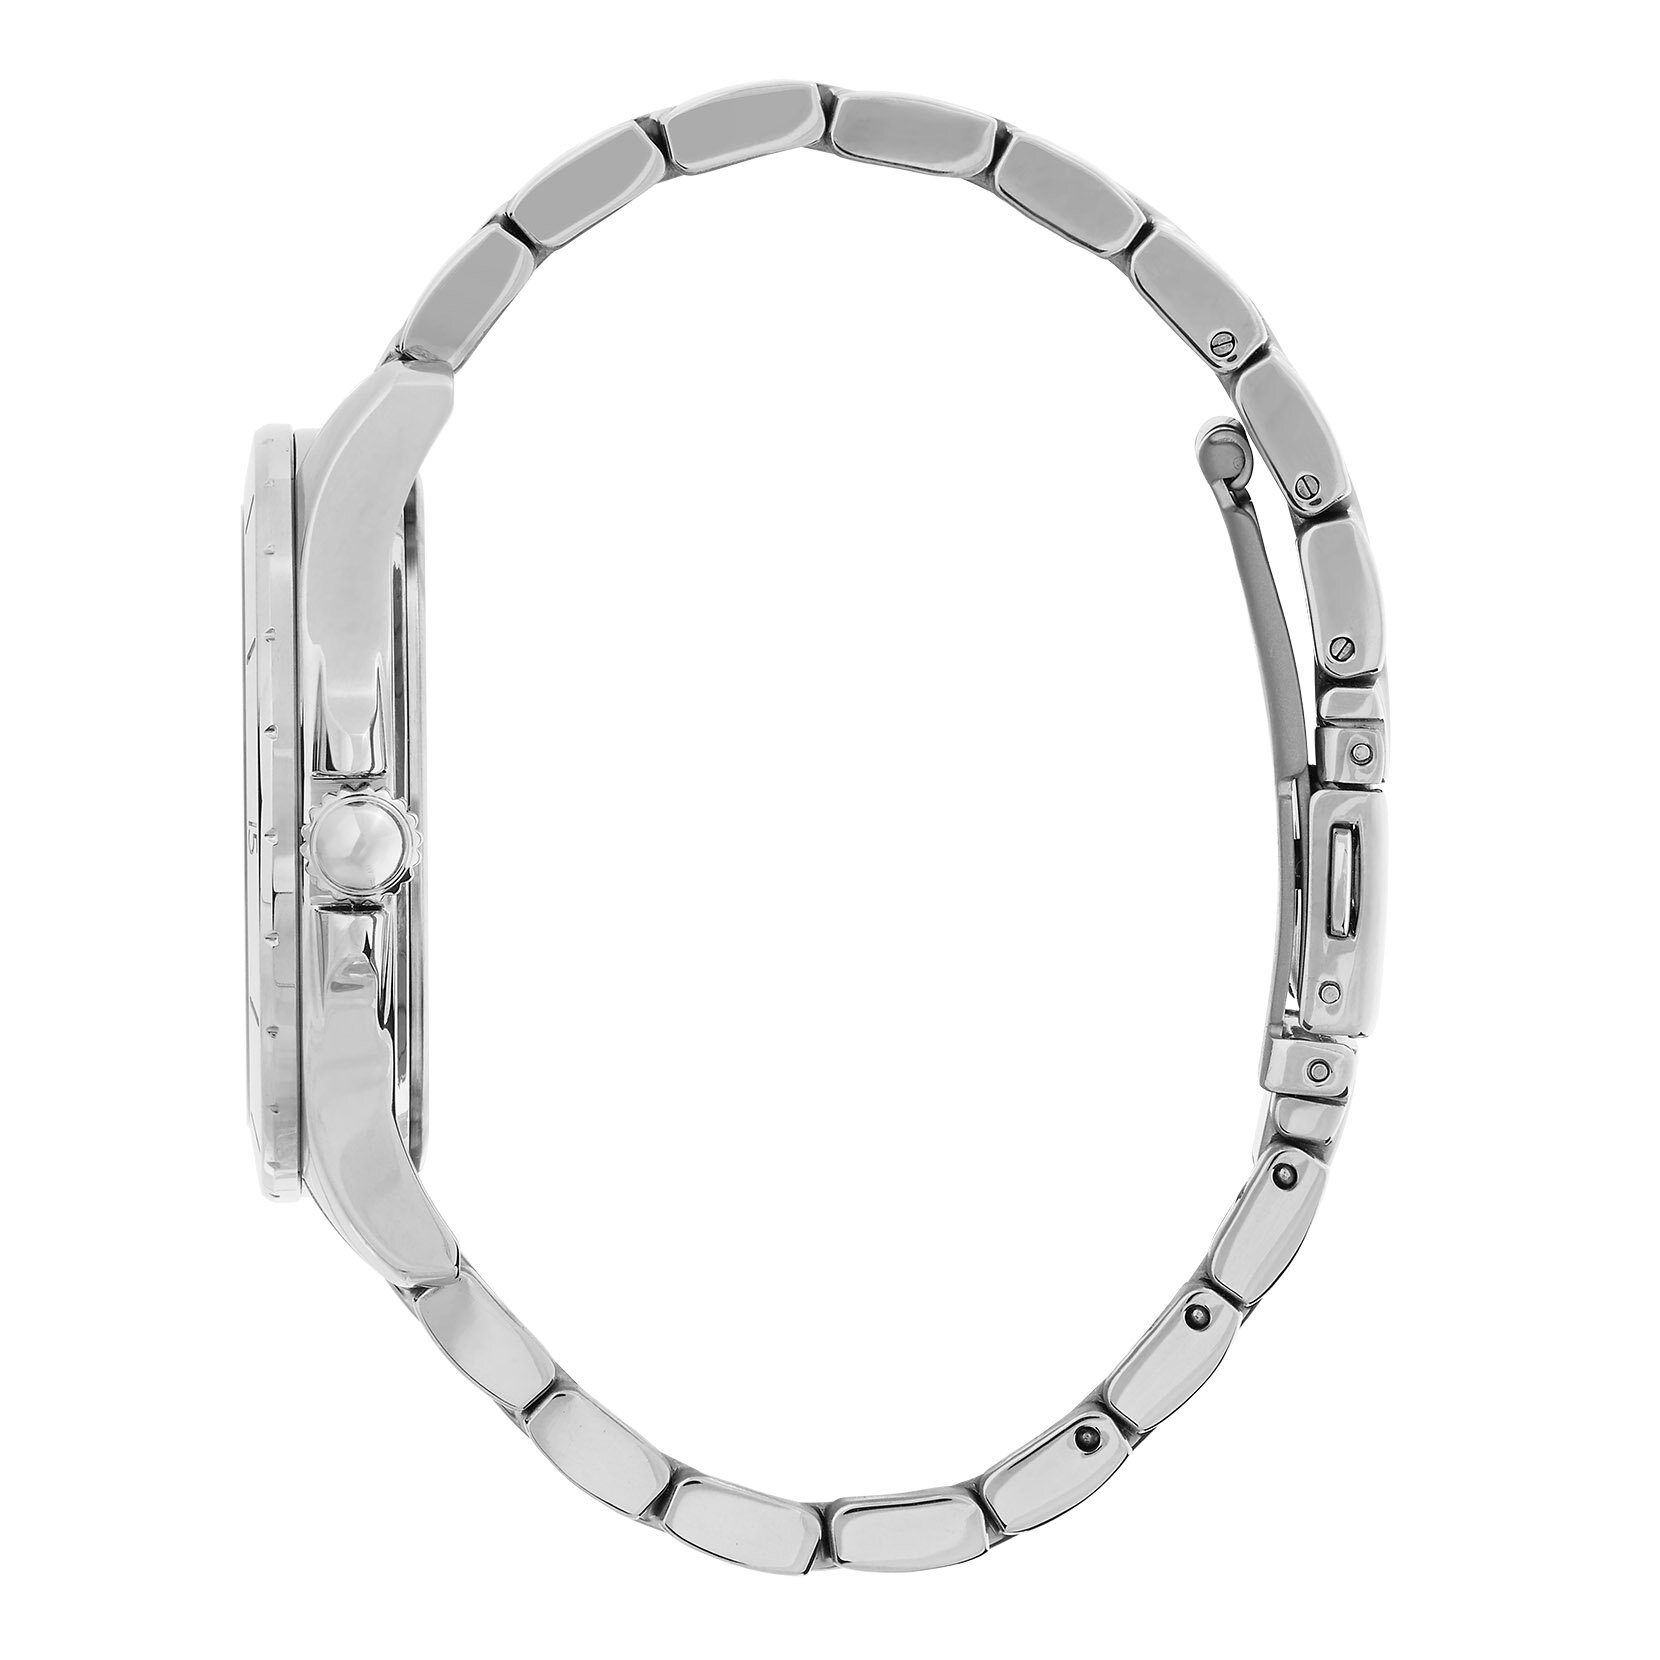 36mm Guilloche Metallic White & Silver Bracelet Watch